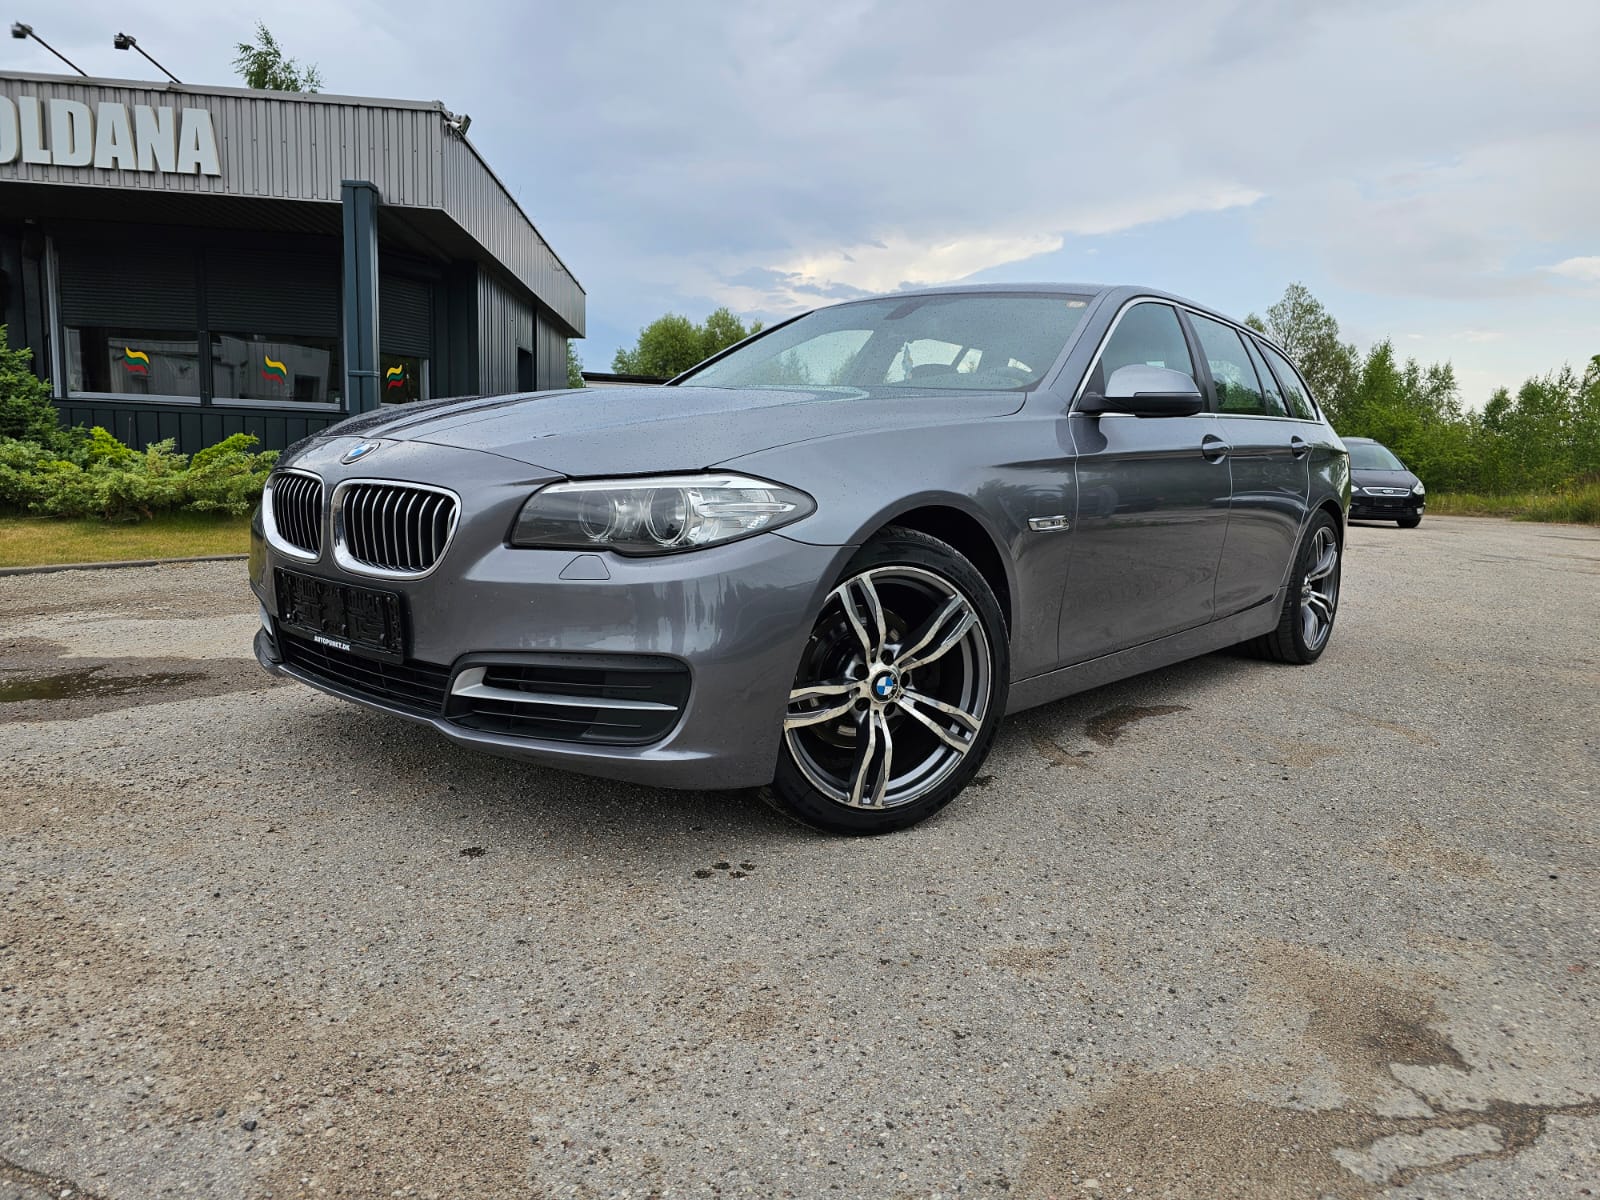 BMW 520, 2.0 l., universalas, 2013-08/naudoti automobiliai/Roldana